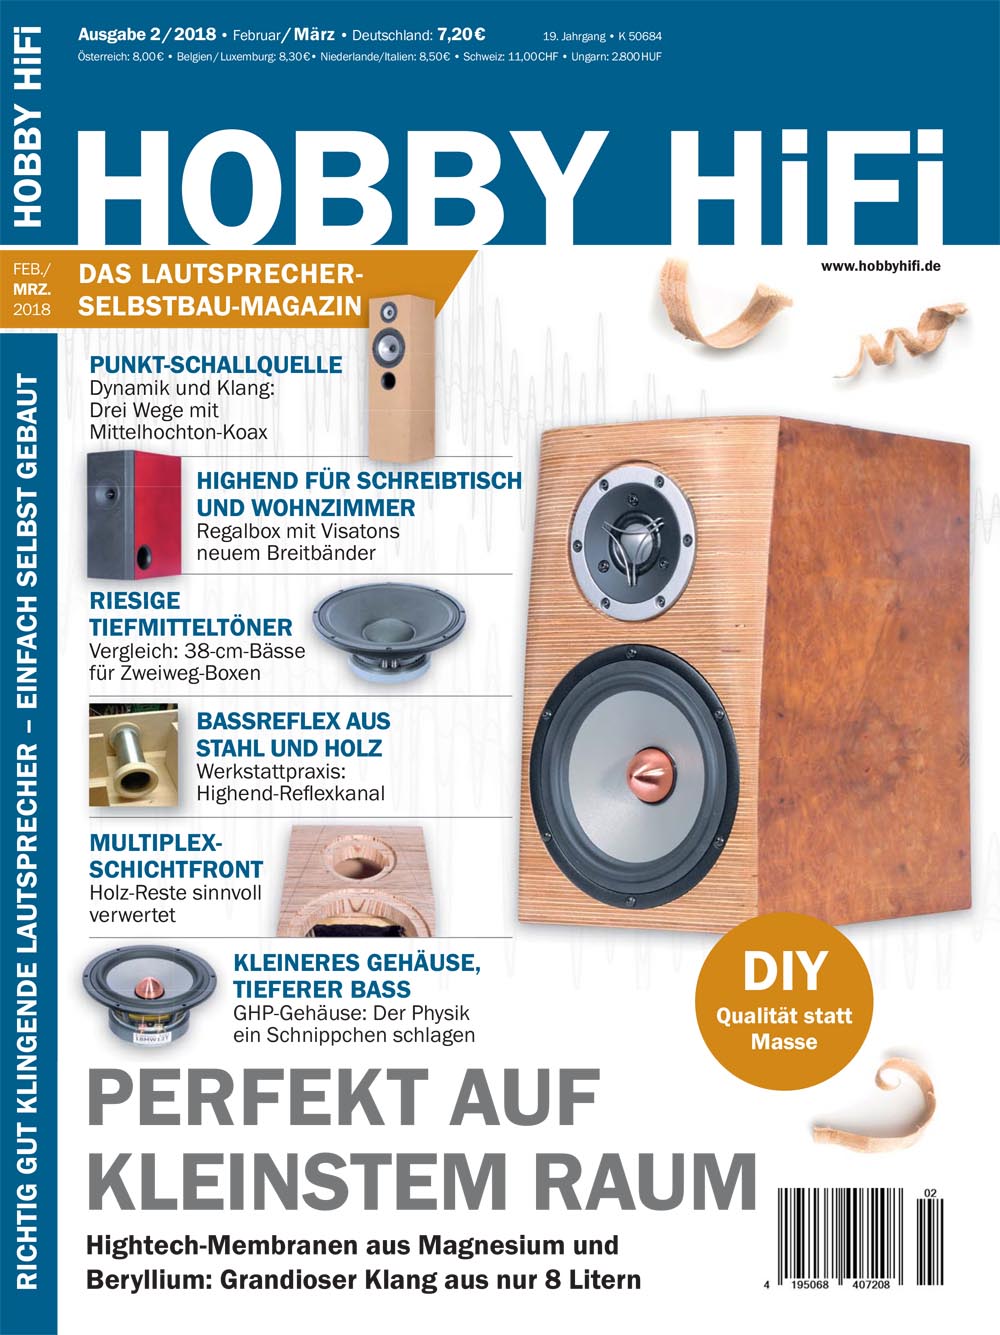 Hobby Hifi 2018 Issue 02-2018